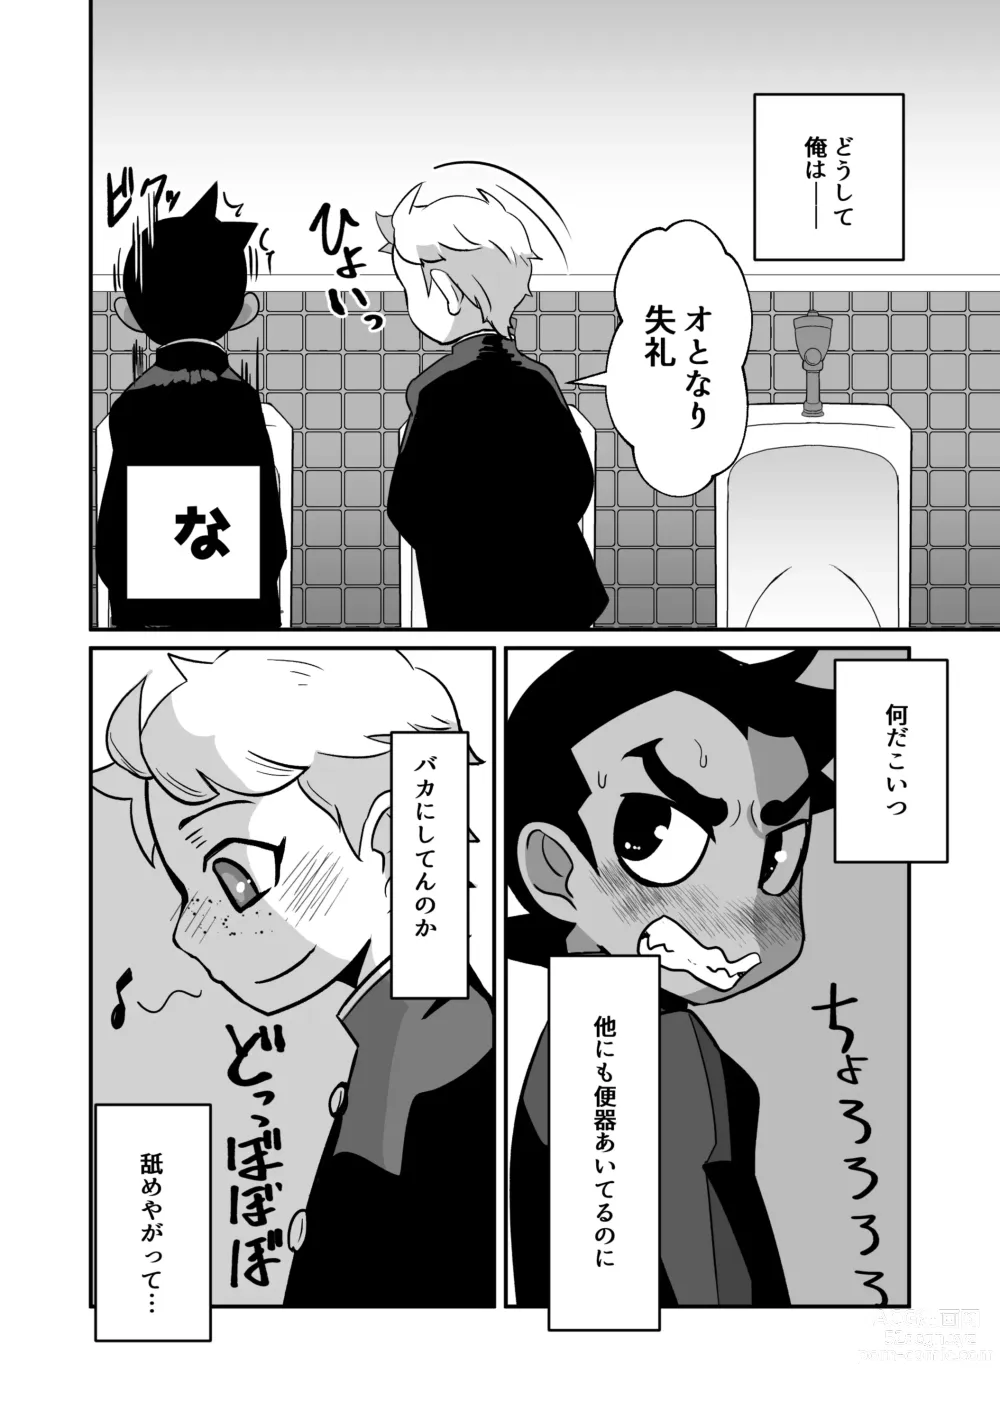 Page 14 of doujinshi Seiyoku no Hanashi.